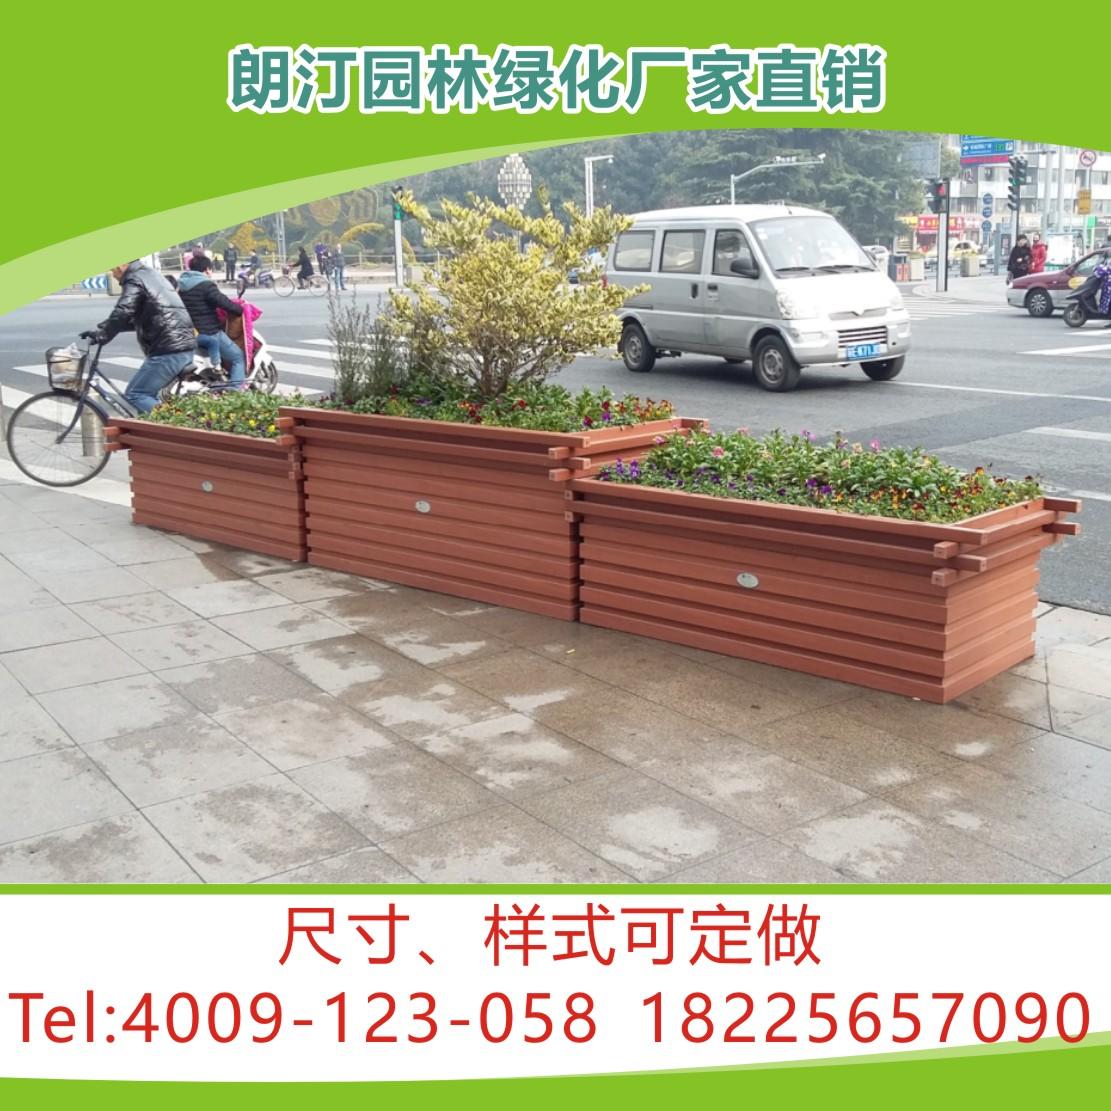 花箱厂家市政道路景观绿化工程PVC微发泡树围花箱